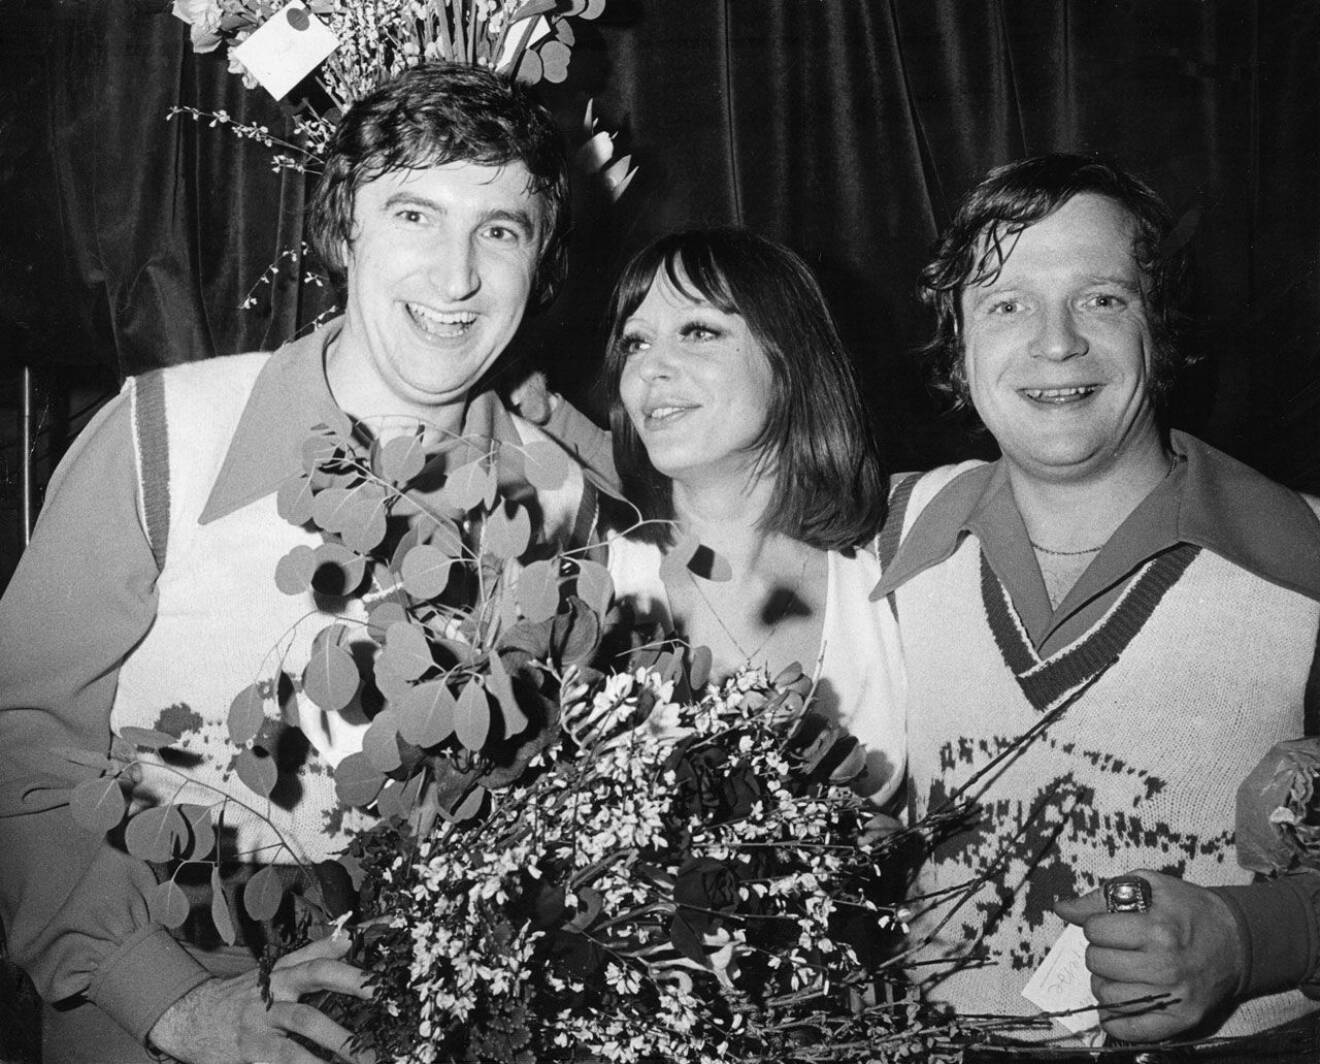 Bästa trion! Krogshowen Lill, Brasse och Magnus på Berns blev succé 1973.